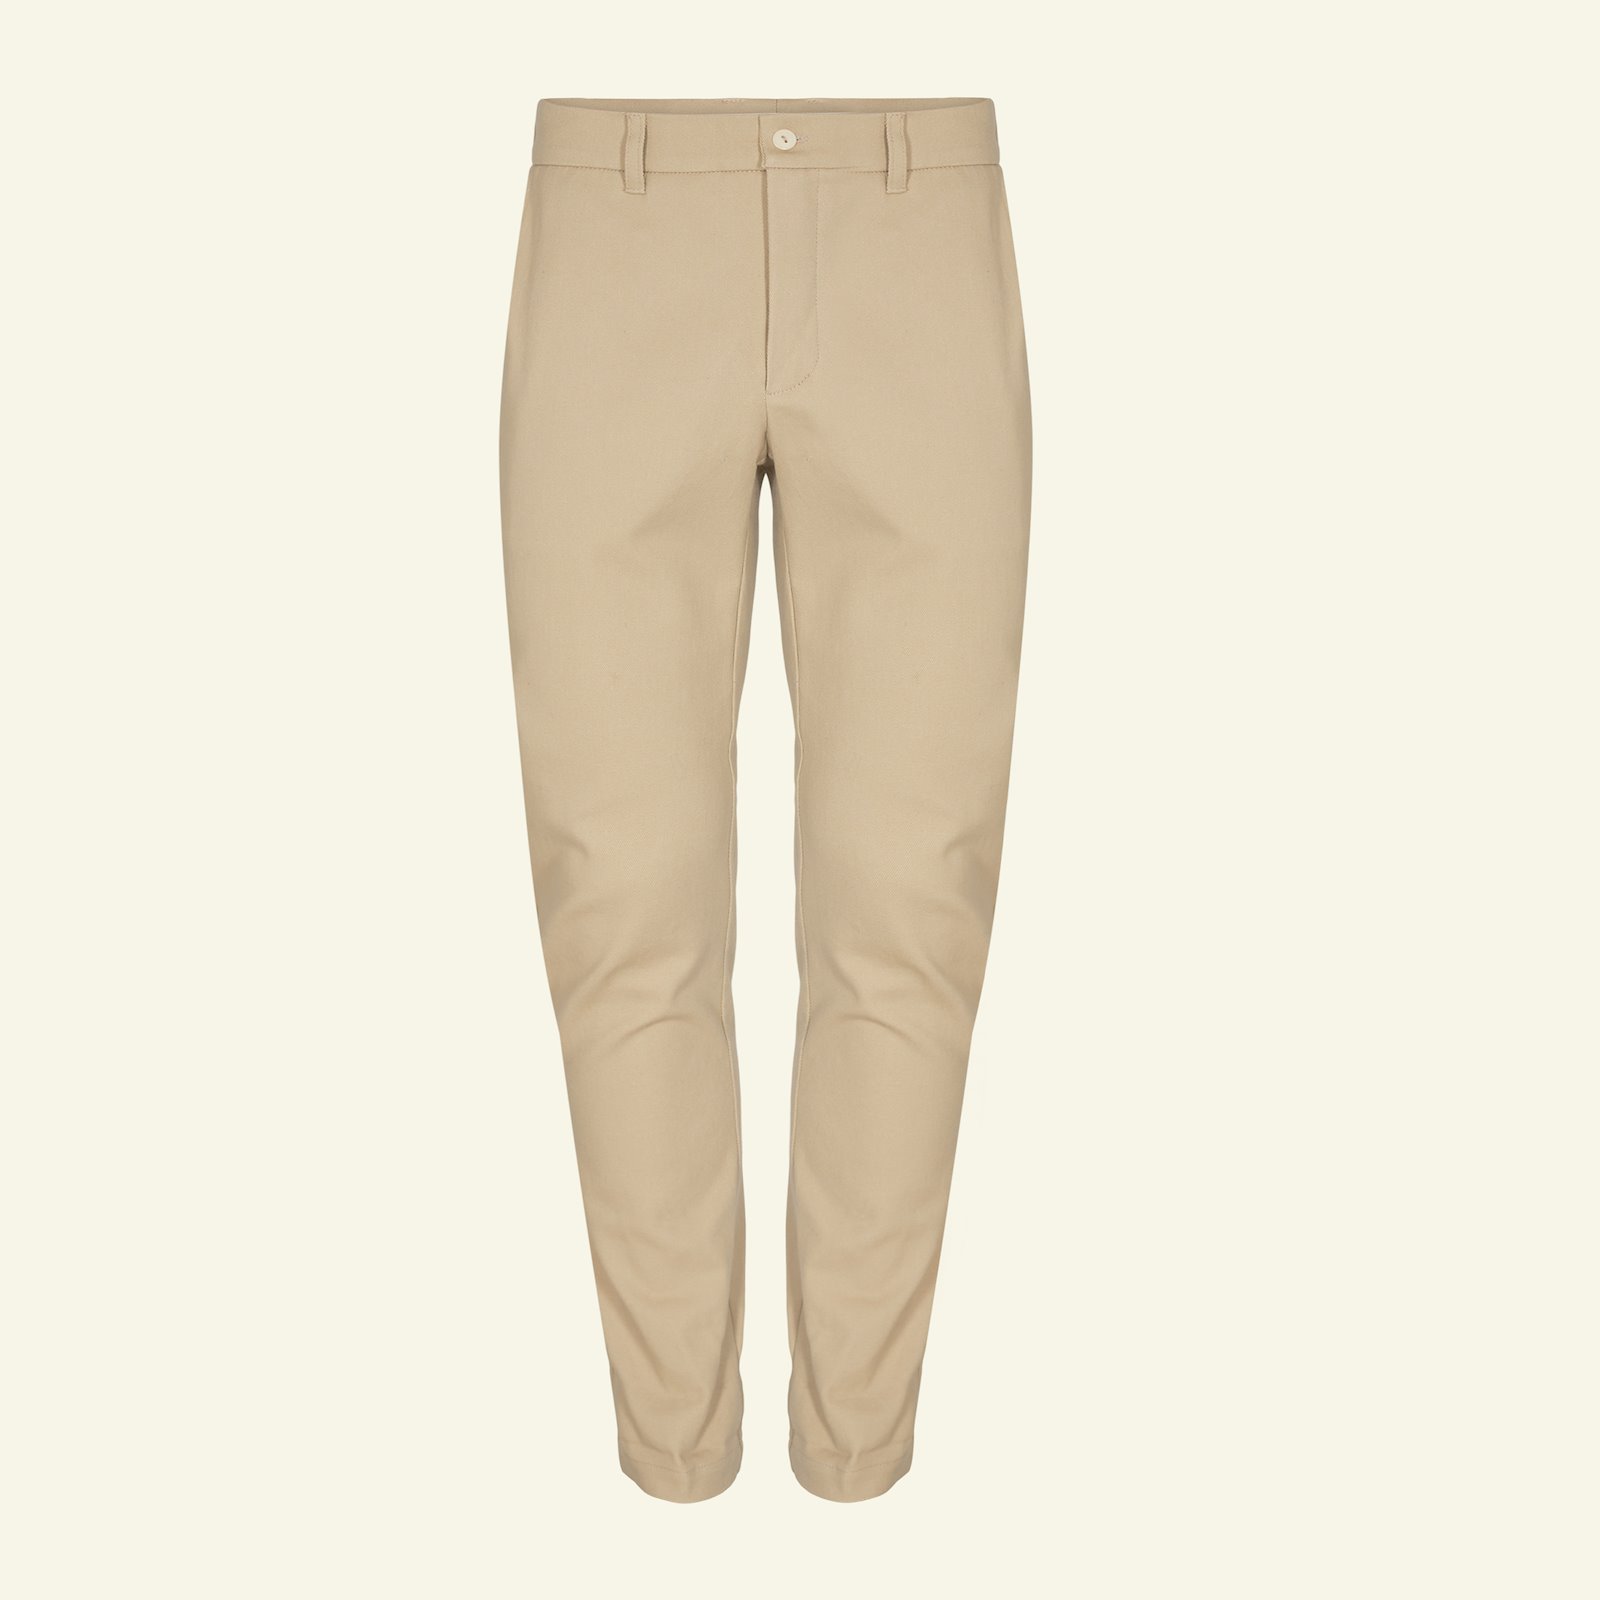 Chino trousers, 46 p85001_460842_sskit